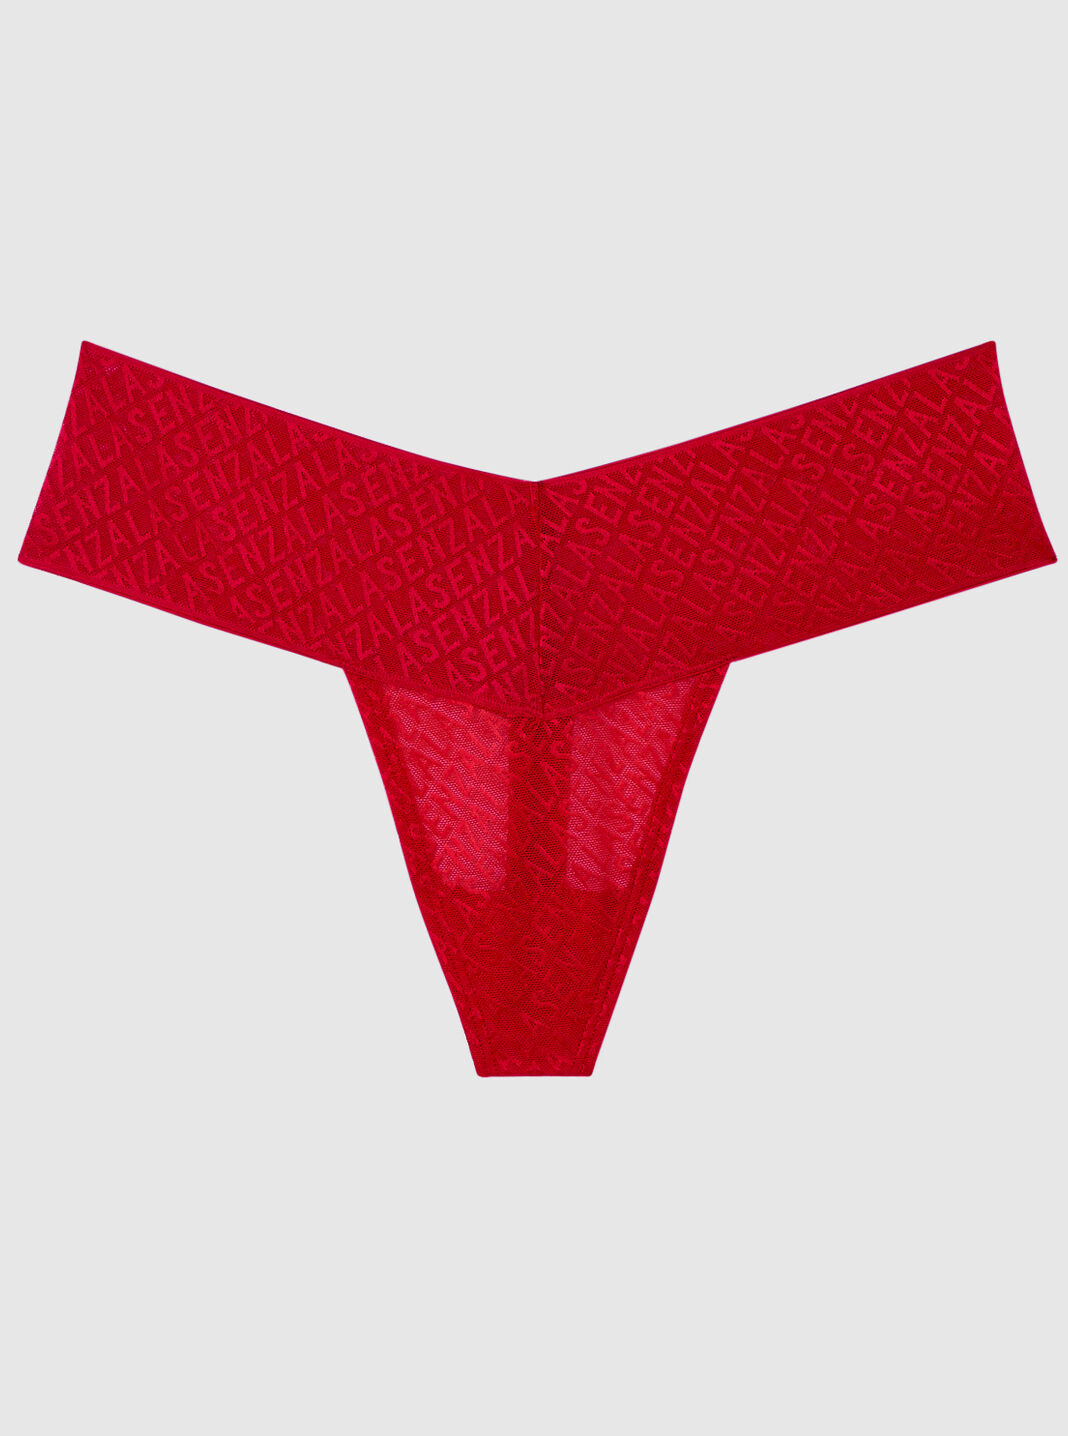 La Senza on X: calling all screamers 👻 👻 panties NOW 7/$29.95 online &  in stores.  #panties #halloween #sexytricks   / X